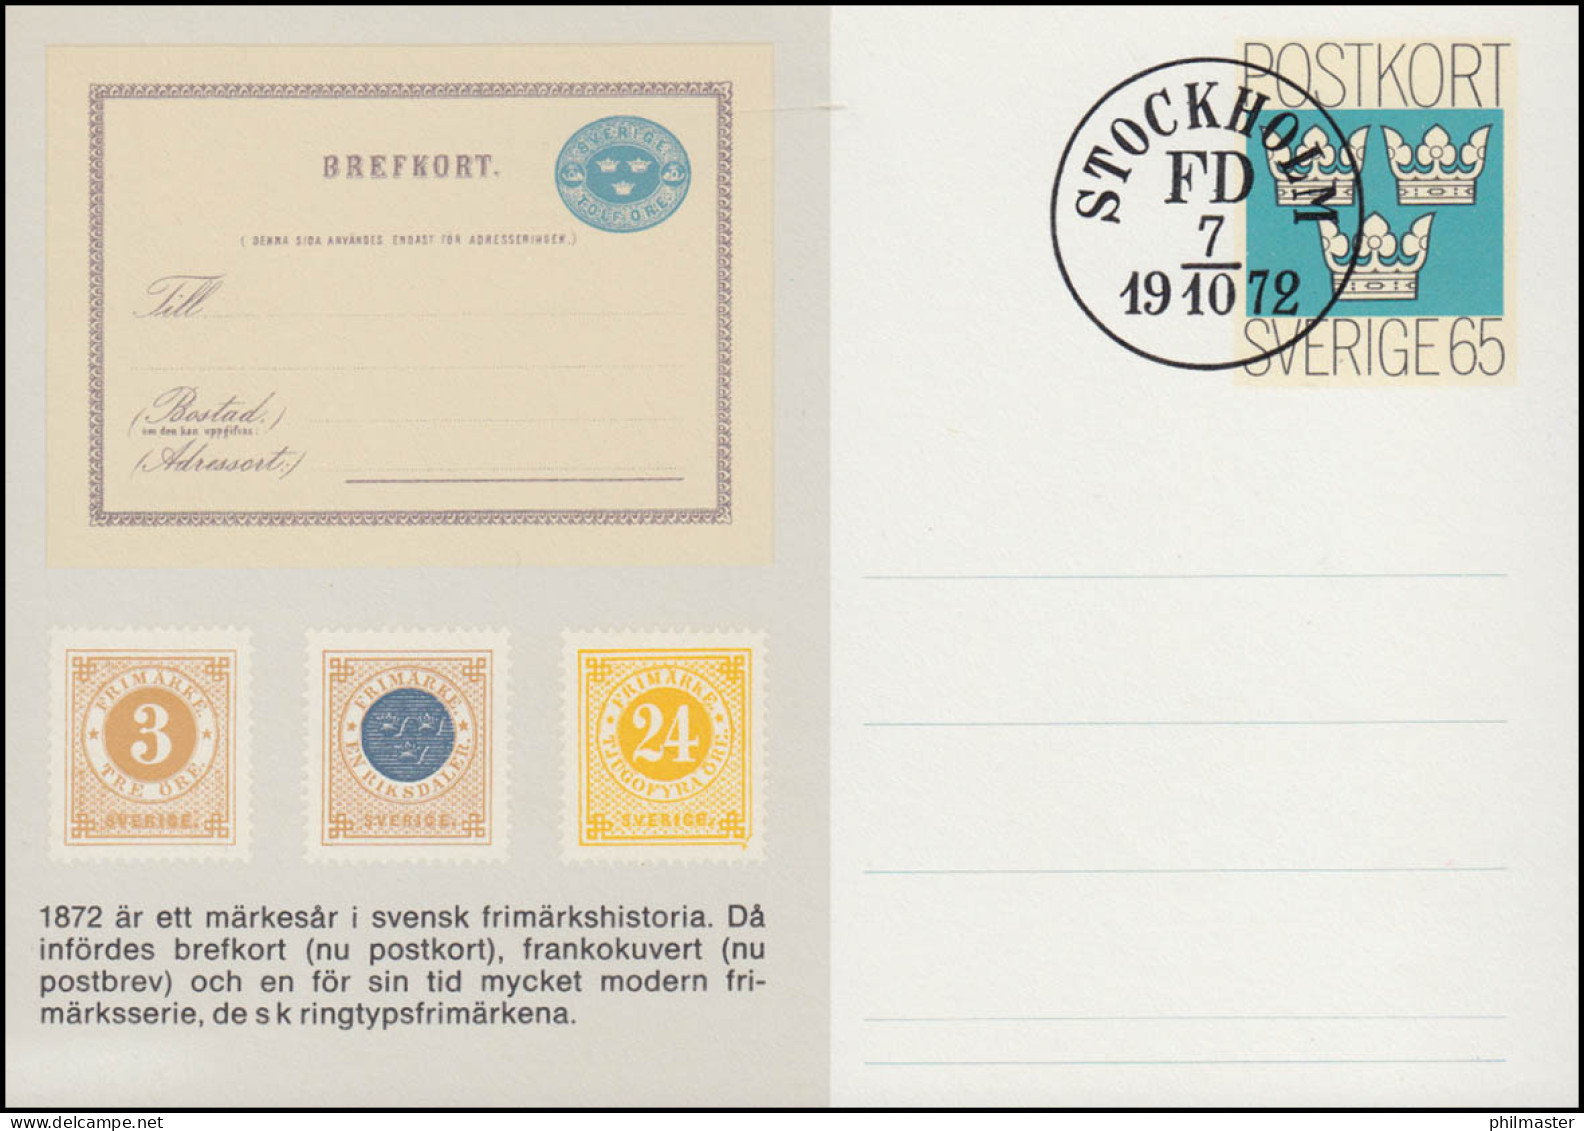 Schweden Postkarte P 93 Tag Der Briefmarke 1972, FDC Stockholm FD 7.10.72 - Postal Stationery